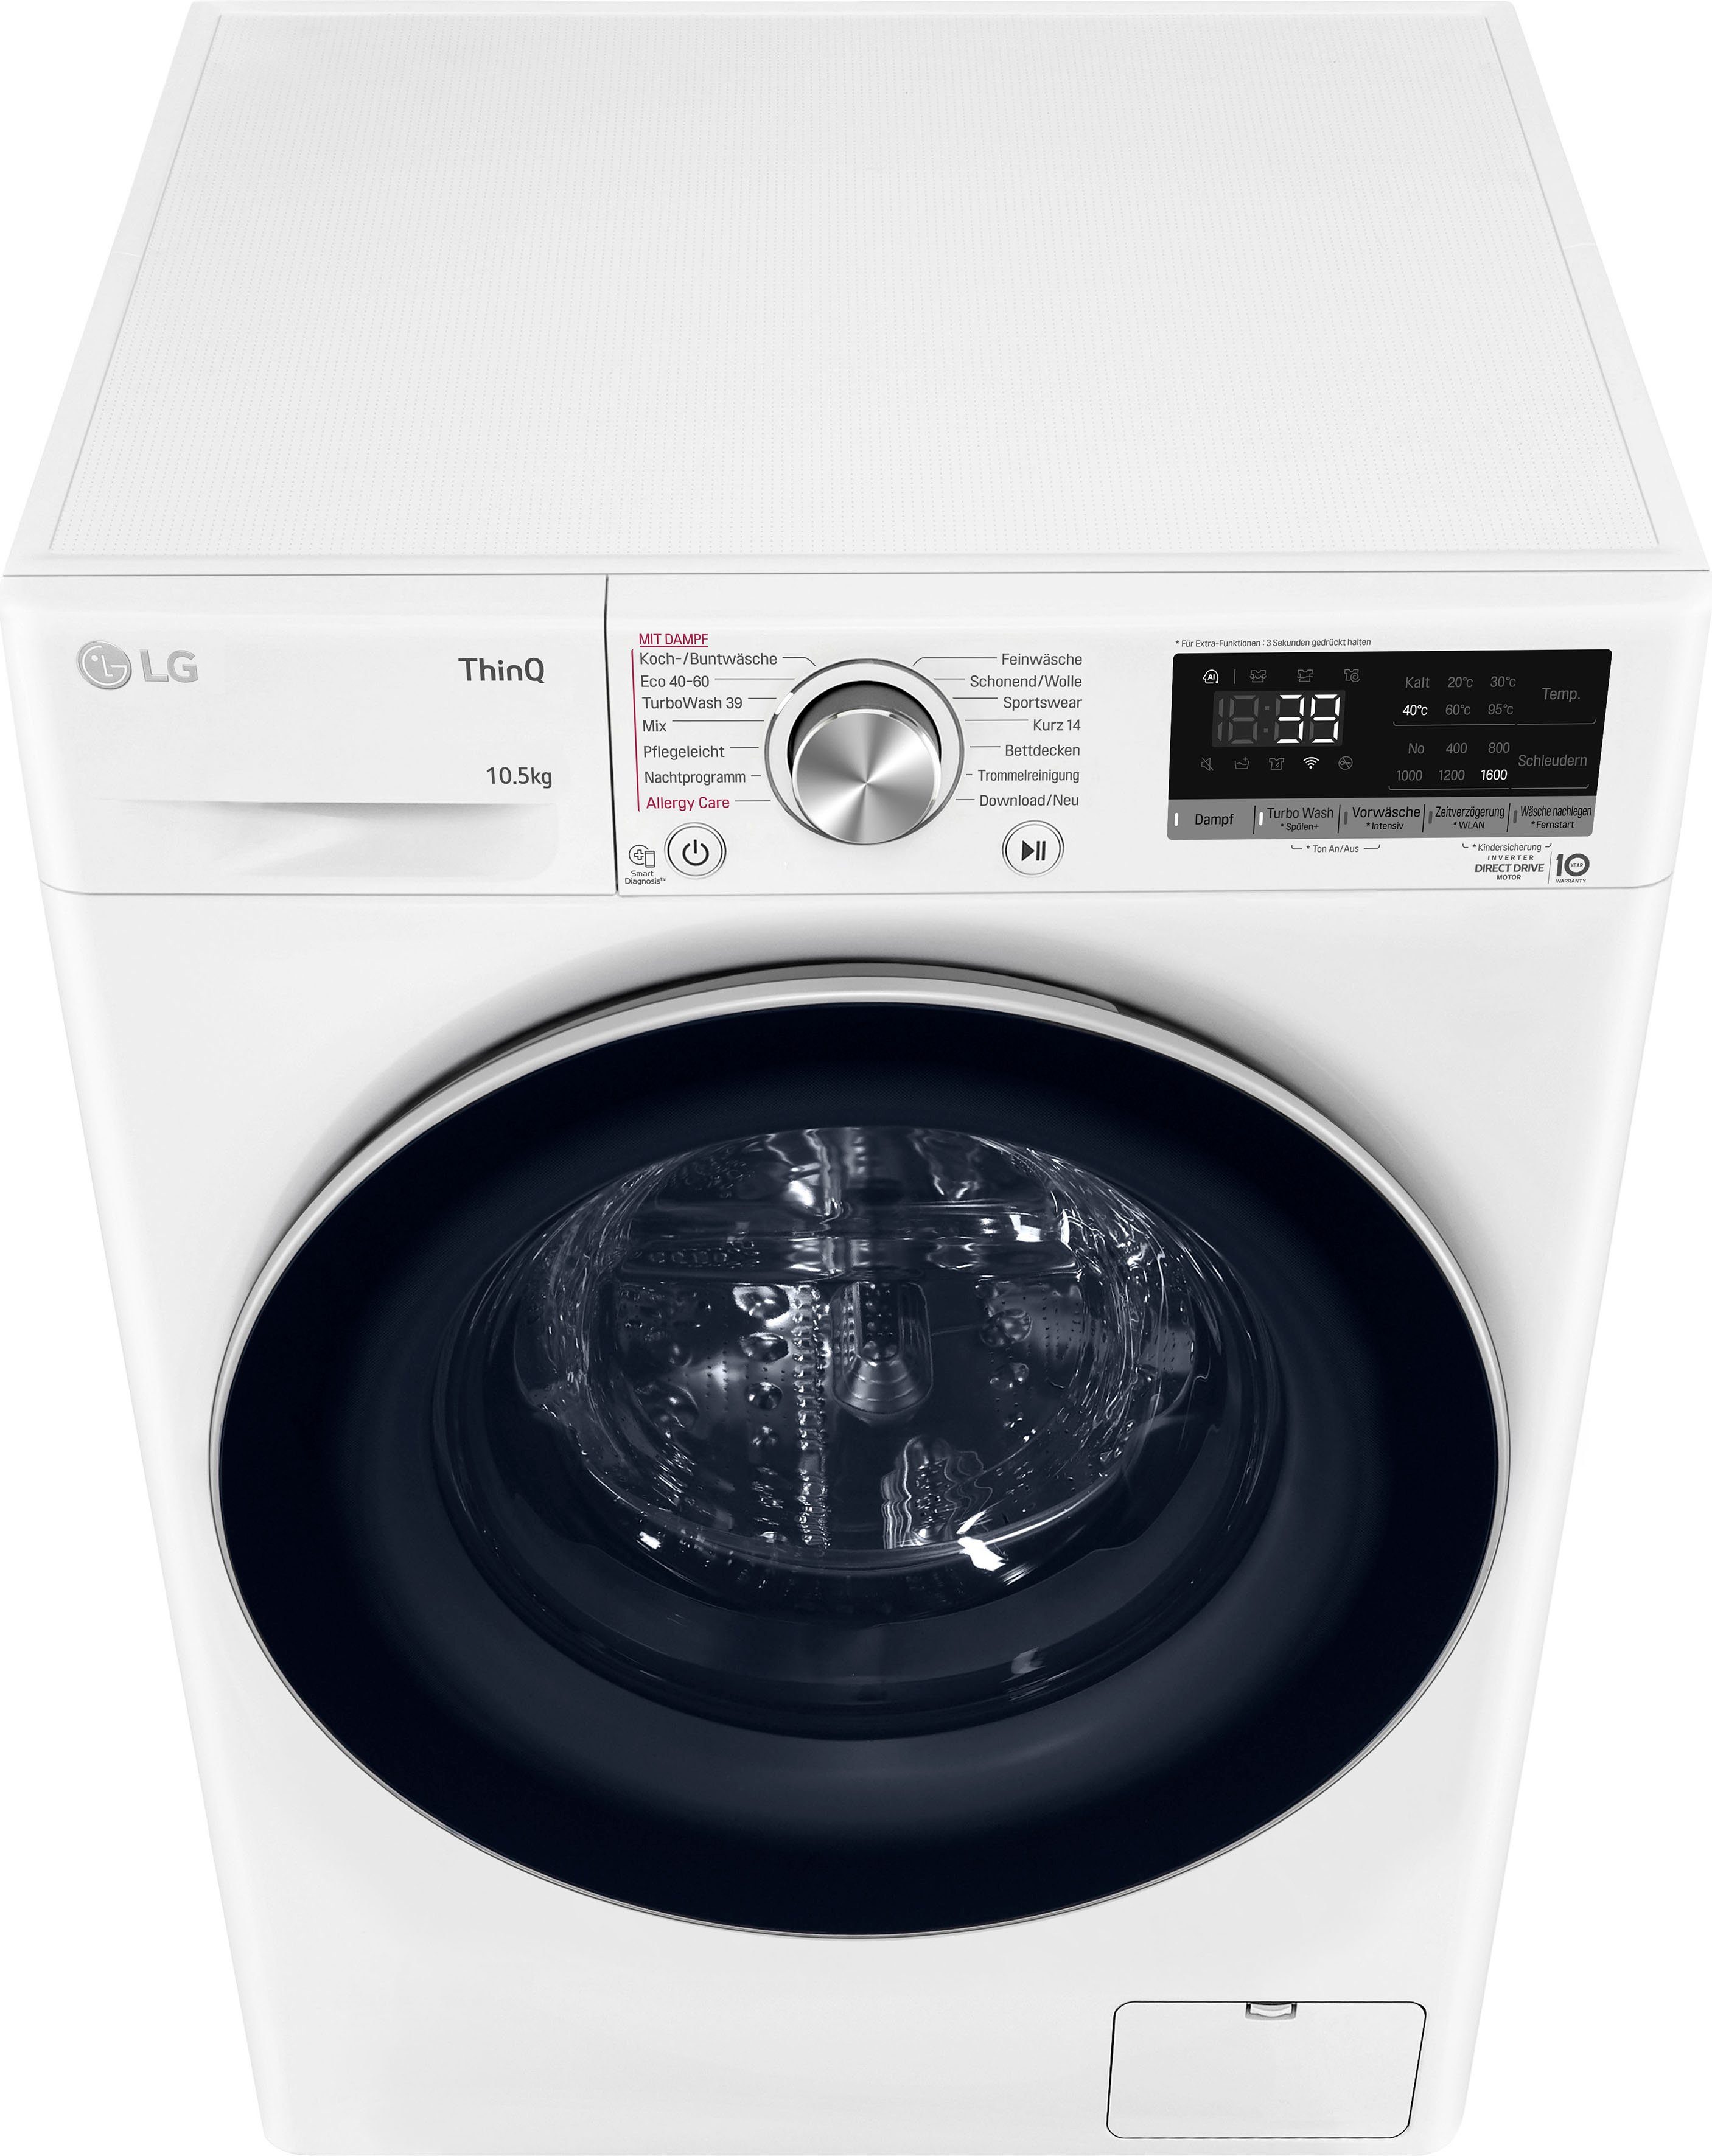 LG Waschmaschine F6WV710P1, 10,5 39 nur TurboWash® U/min, 1600 Minuten Waschen - kg, in